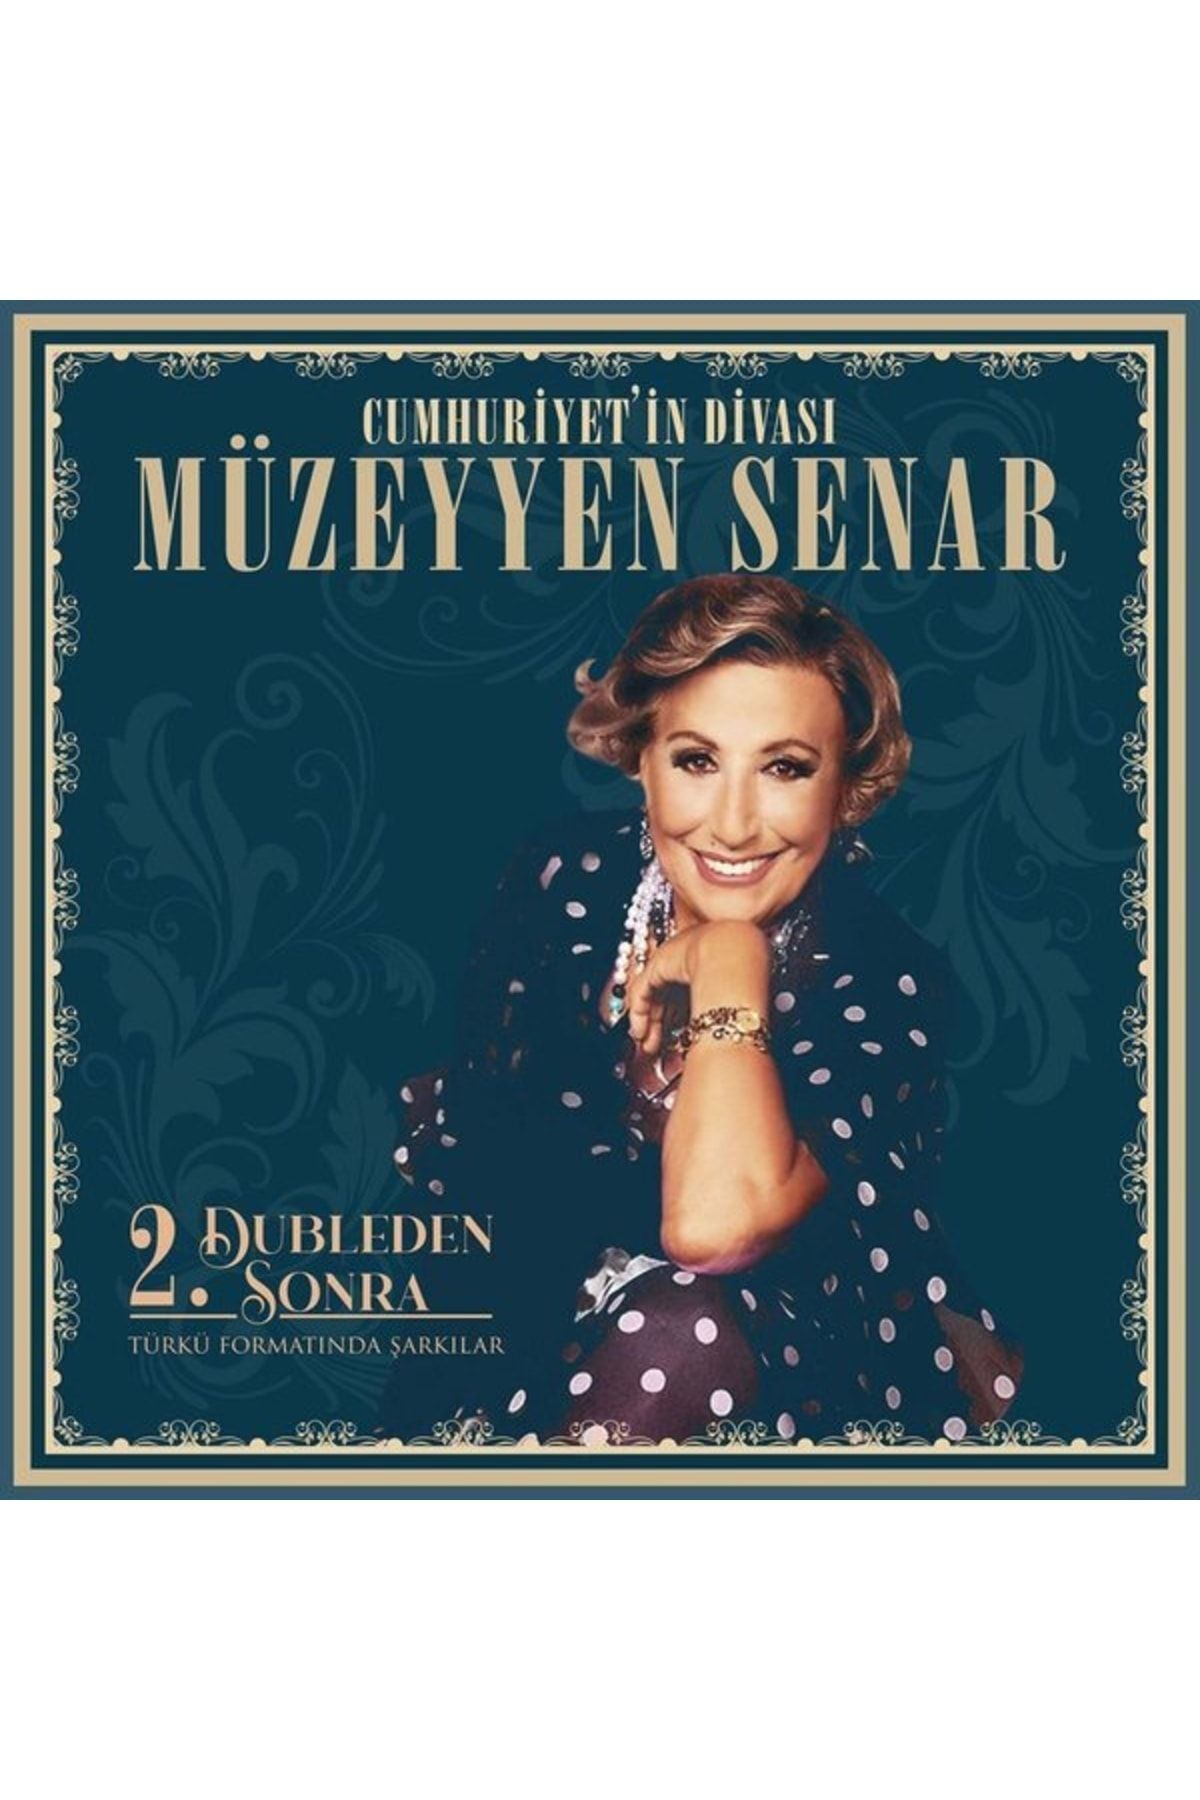 Genel Markalar Müzeyyen Senar - 2. Dubleden Sonra , Lp Türk Sanat Müziği